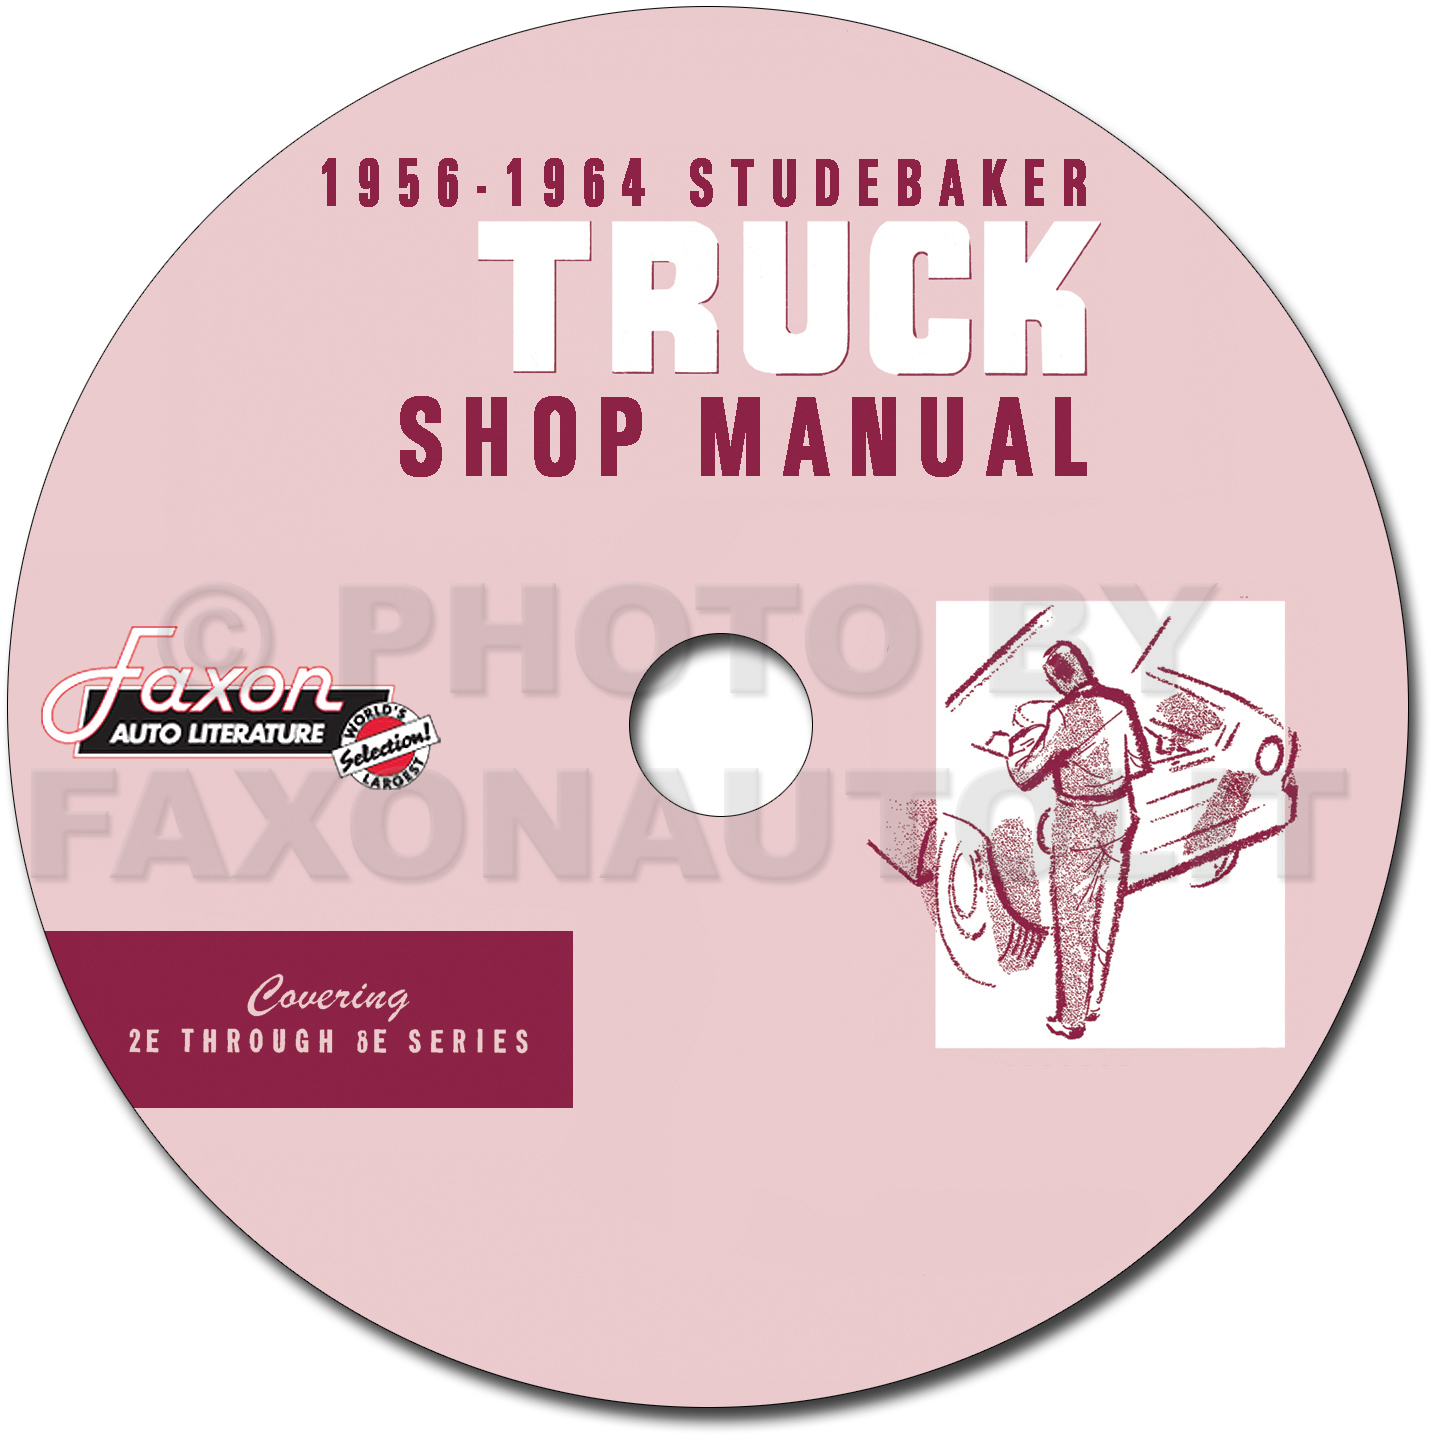 1956-1964 Studebaker Pickup Truck Repair Shop Manual on CD-ROM